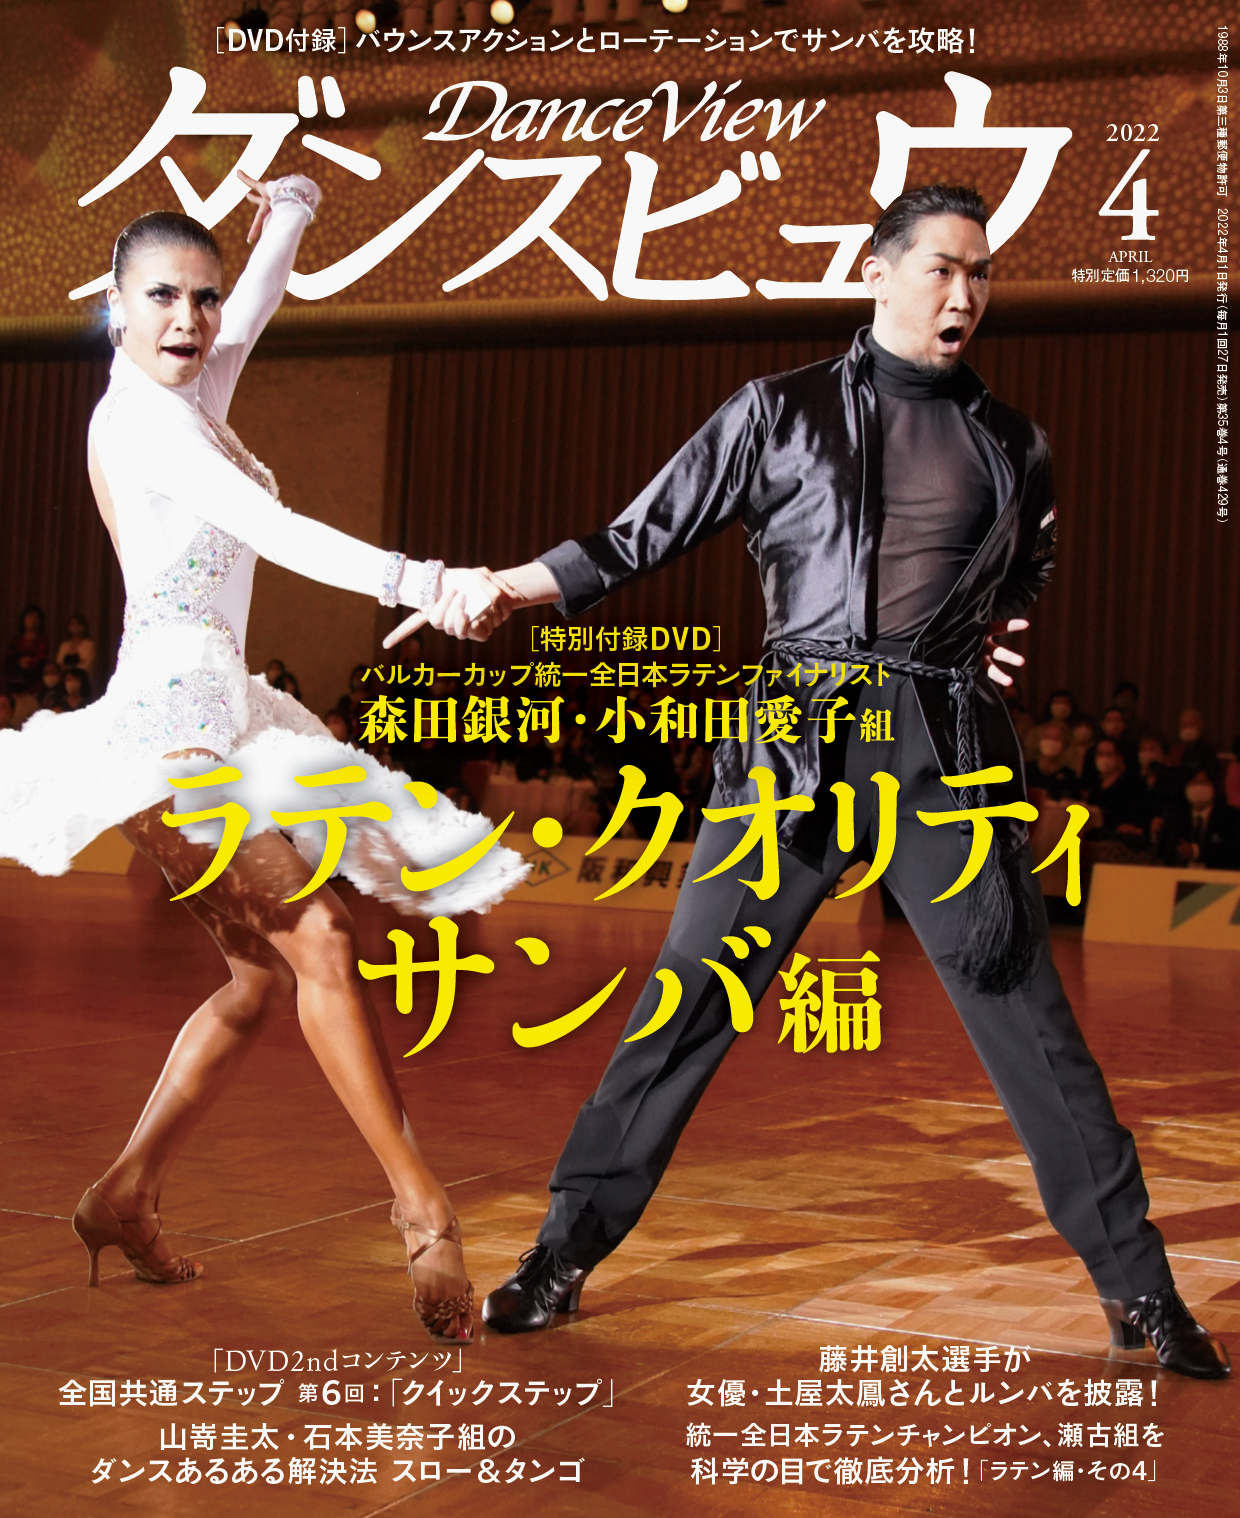 雑誌 | 社交ダンス情報総合サイト ダンスビュウ